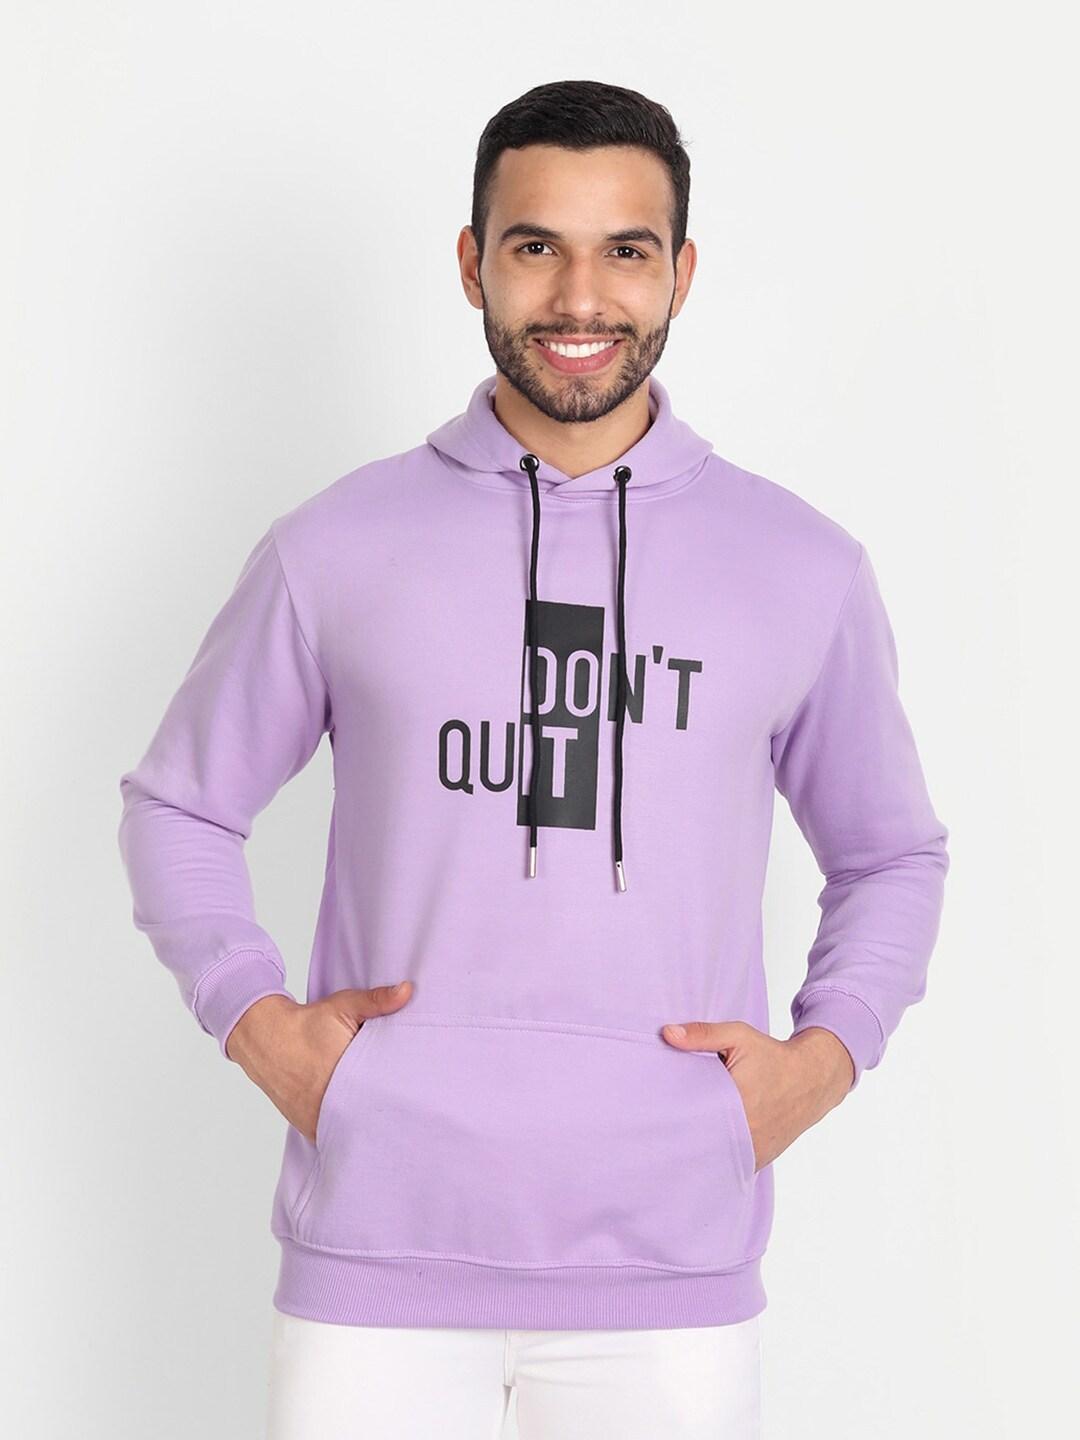 ABSOLUTE DEFENSE Typography Printed Hooded Fleece Sweatshirt